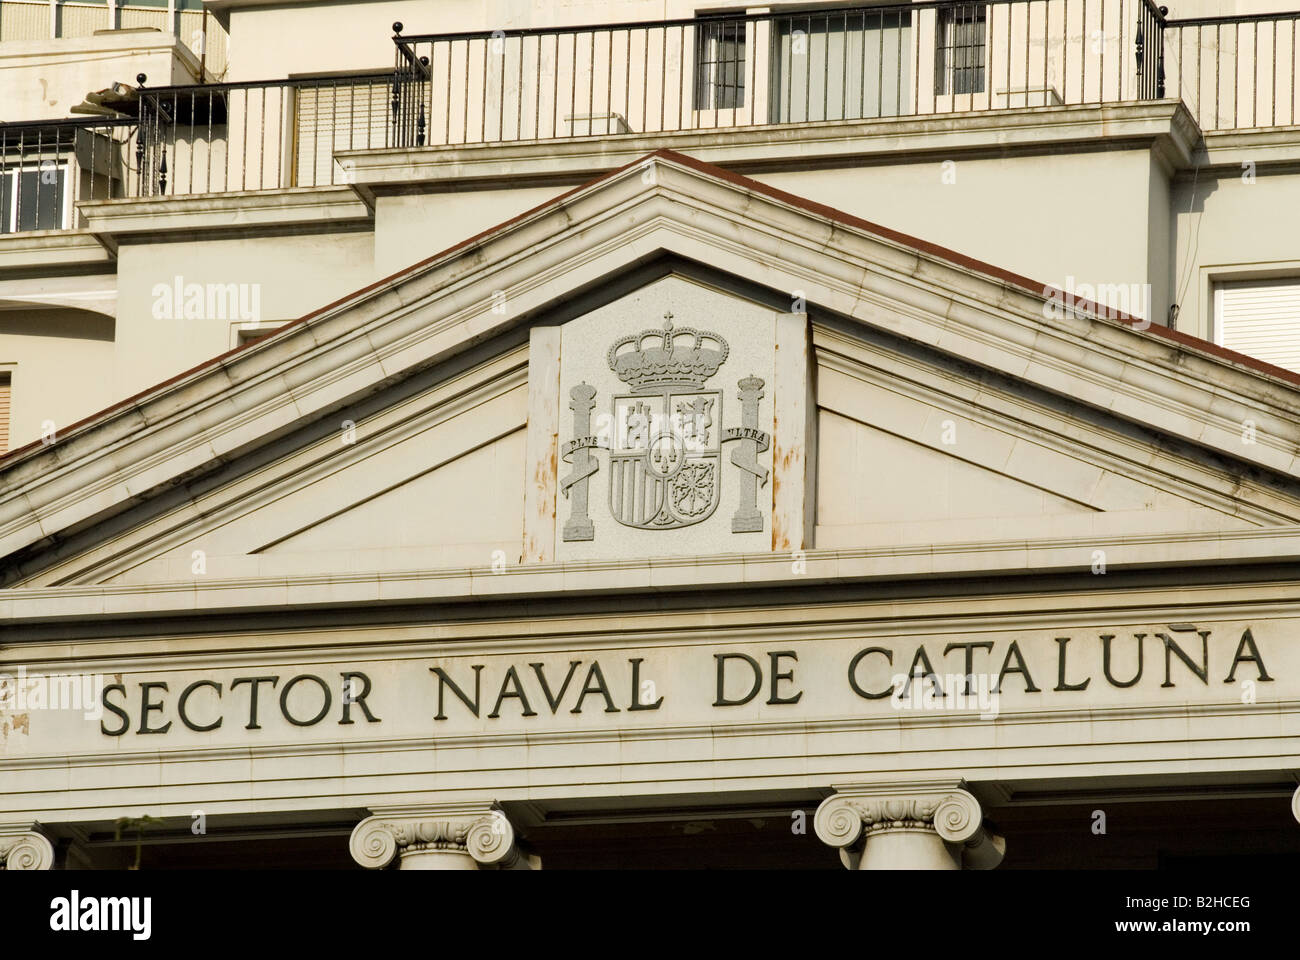 naval sector of cataluna facade barcelona Stock Photo